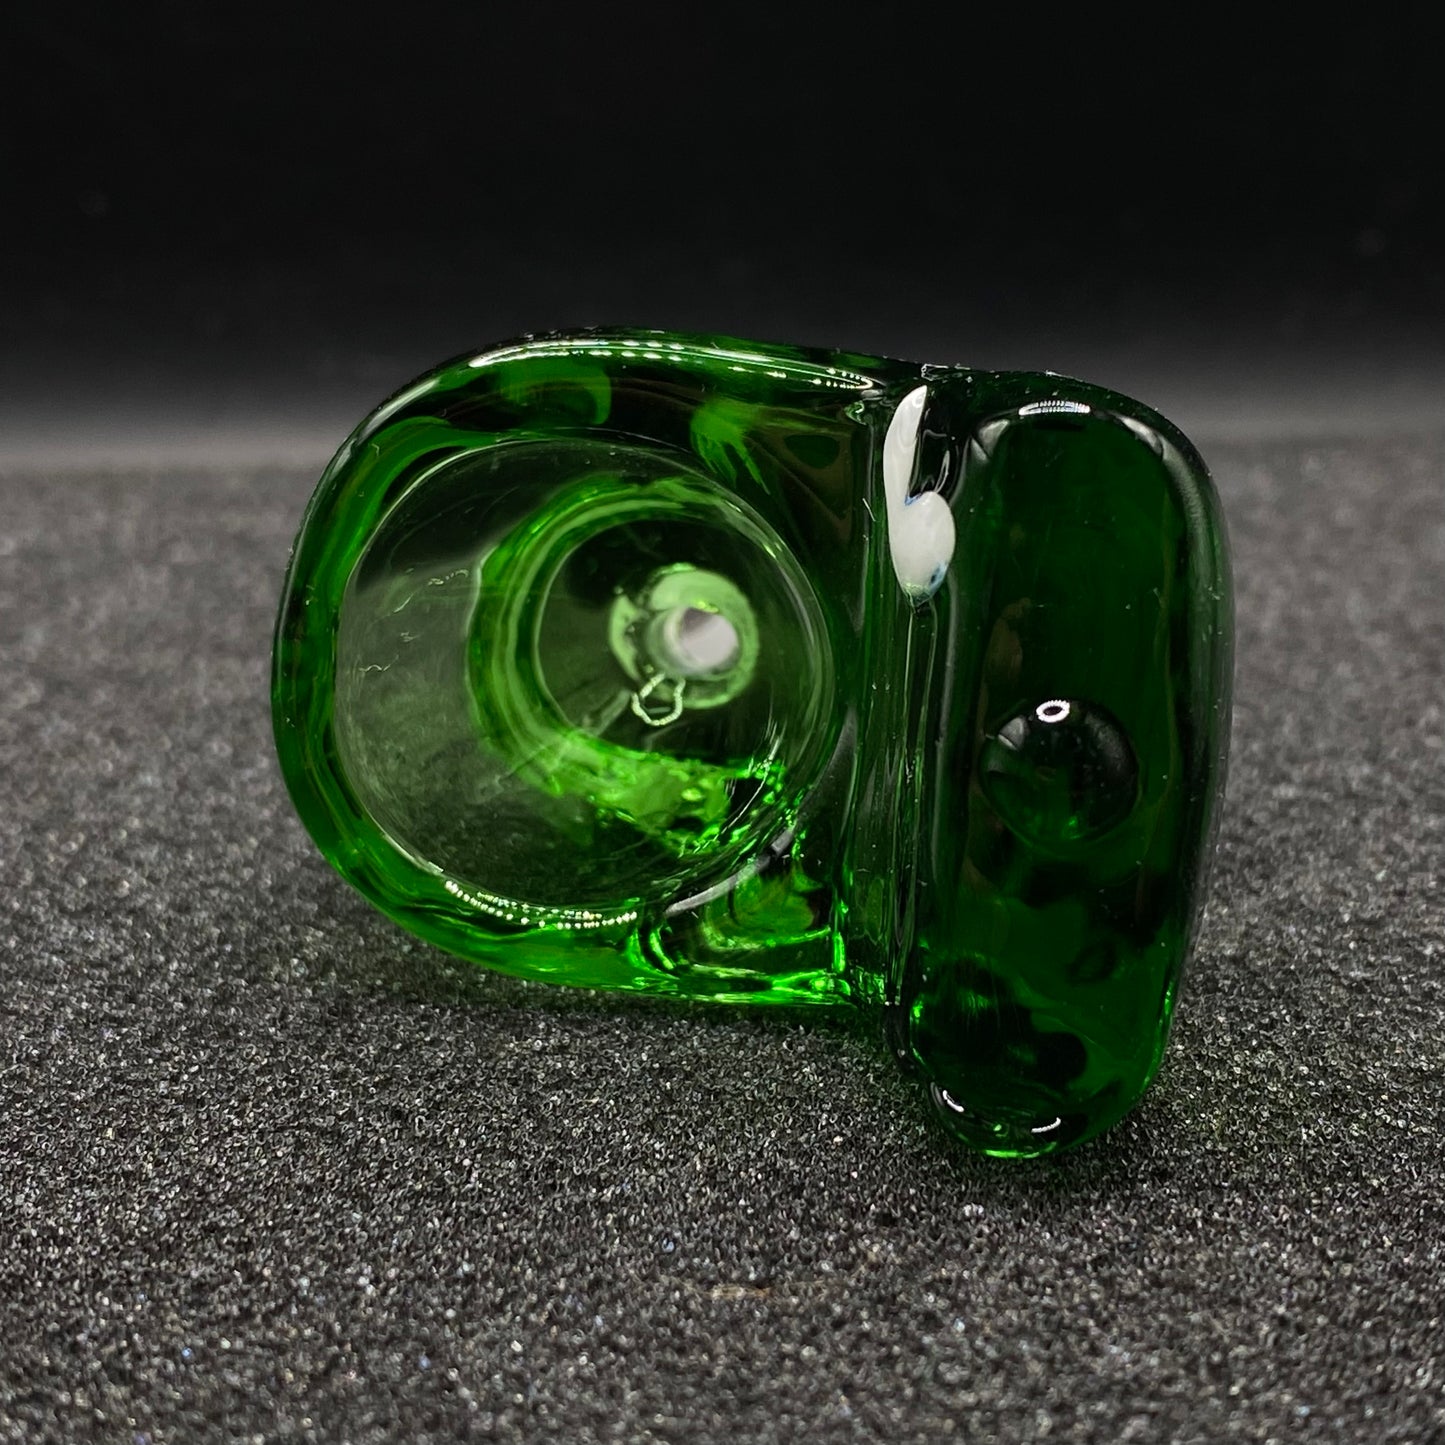 420 Glass - 14mm Single Hole Glass Bowl Slide